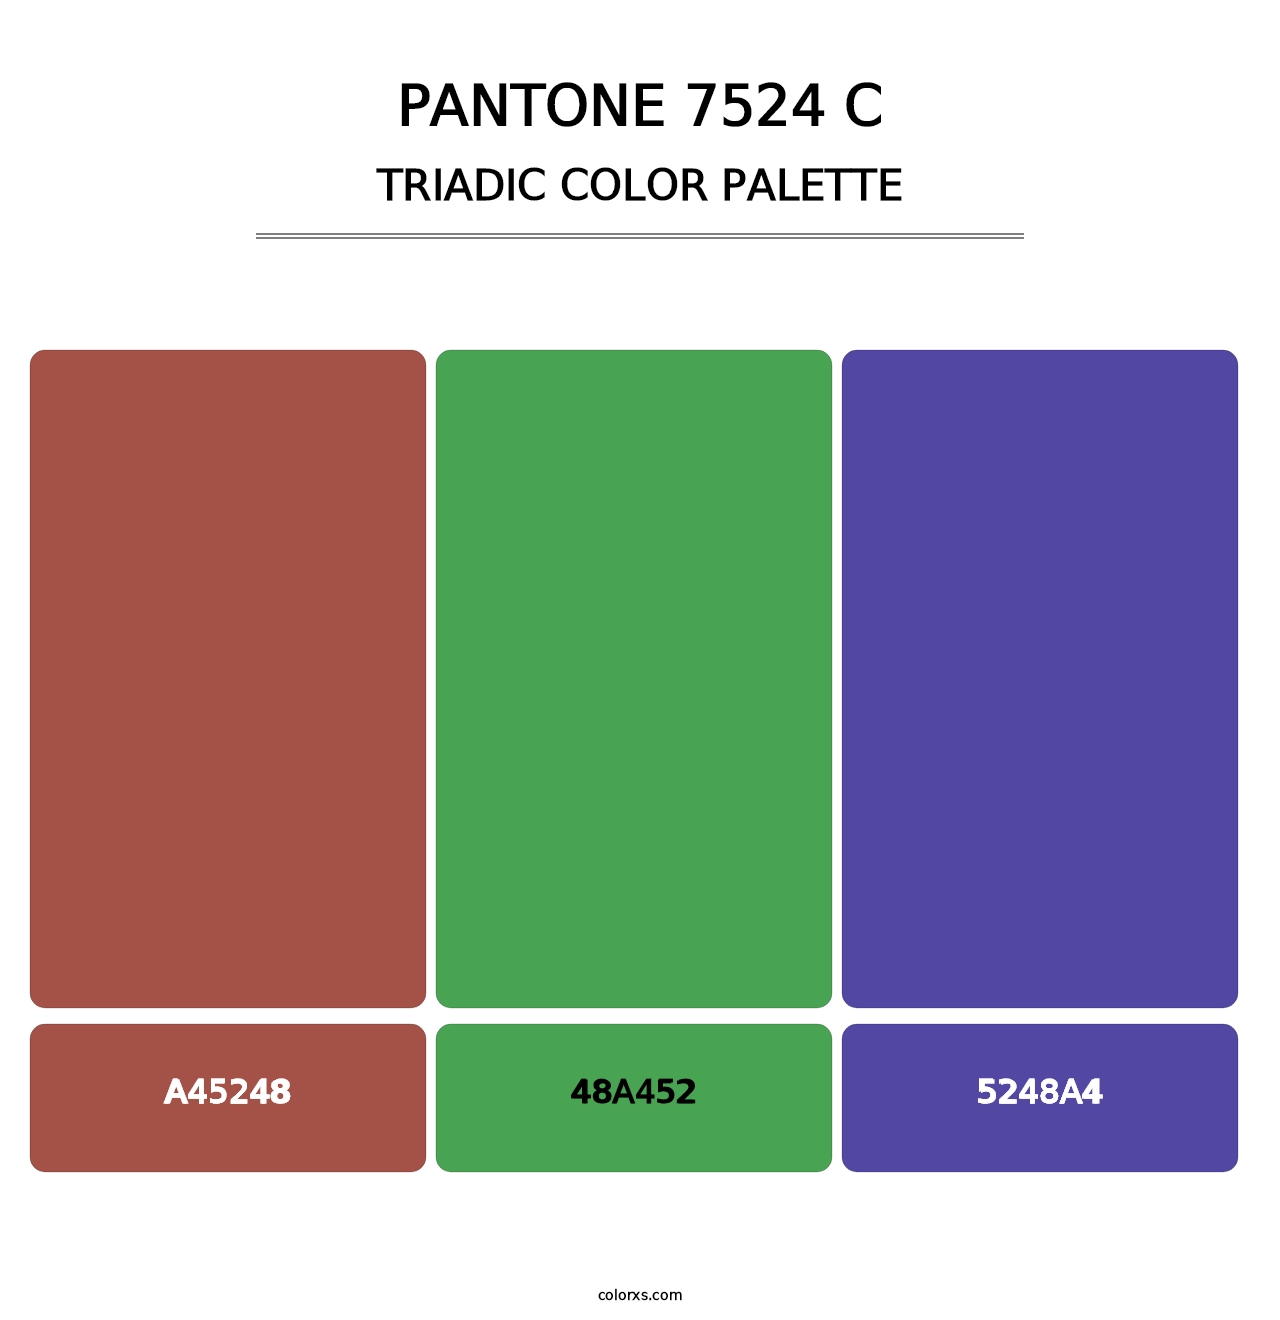 PANTONE 7524 C - Triadic Color Palette